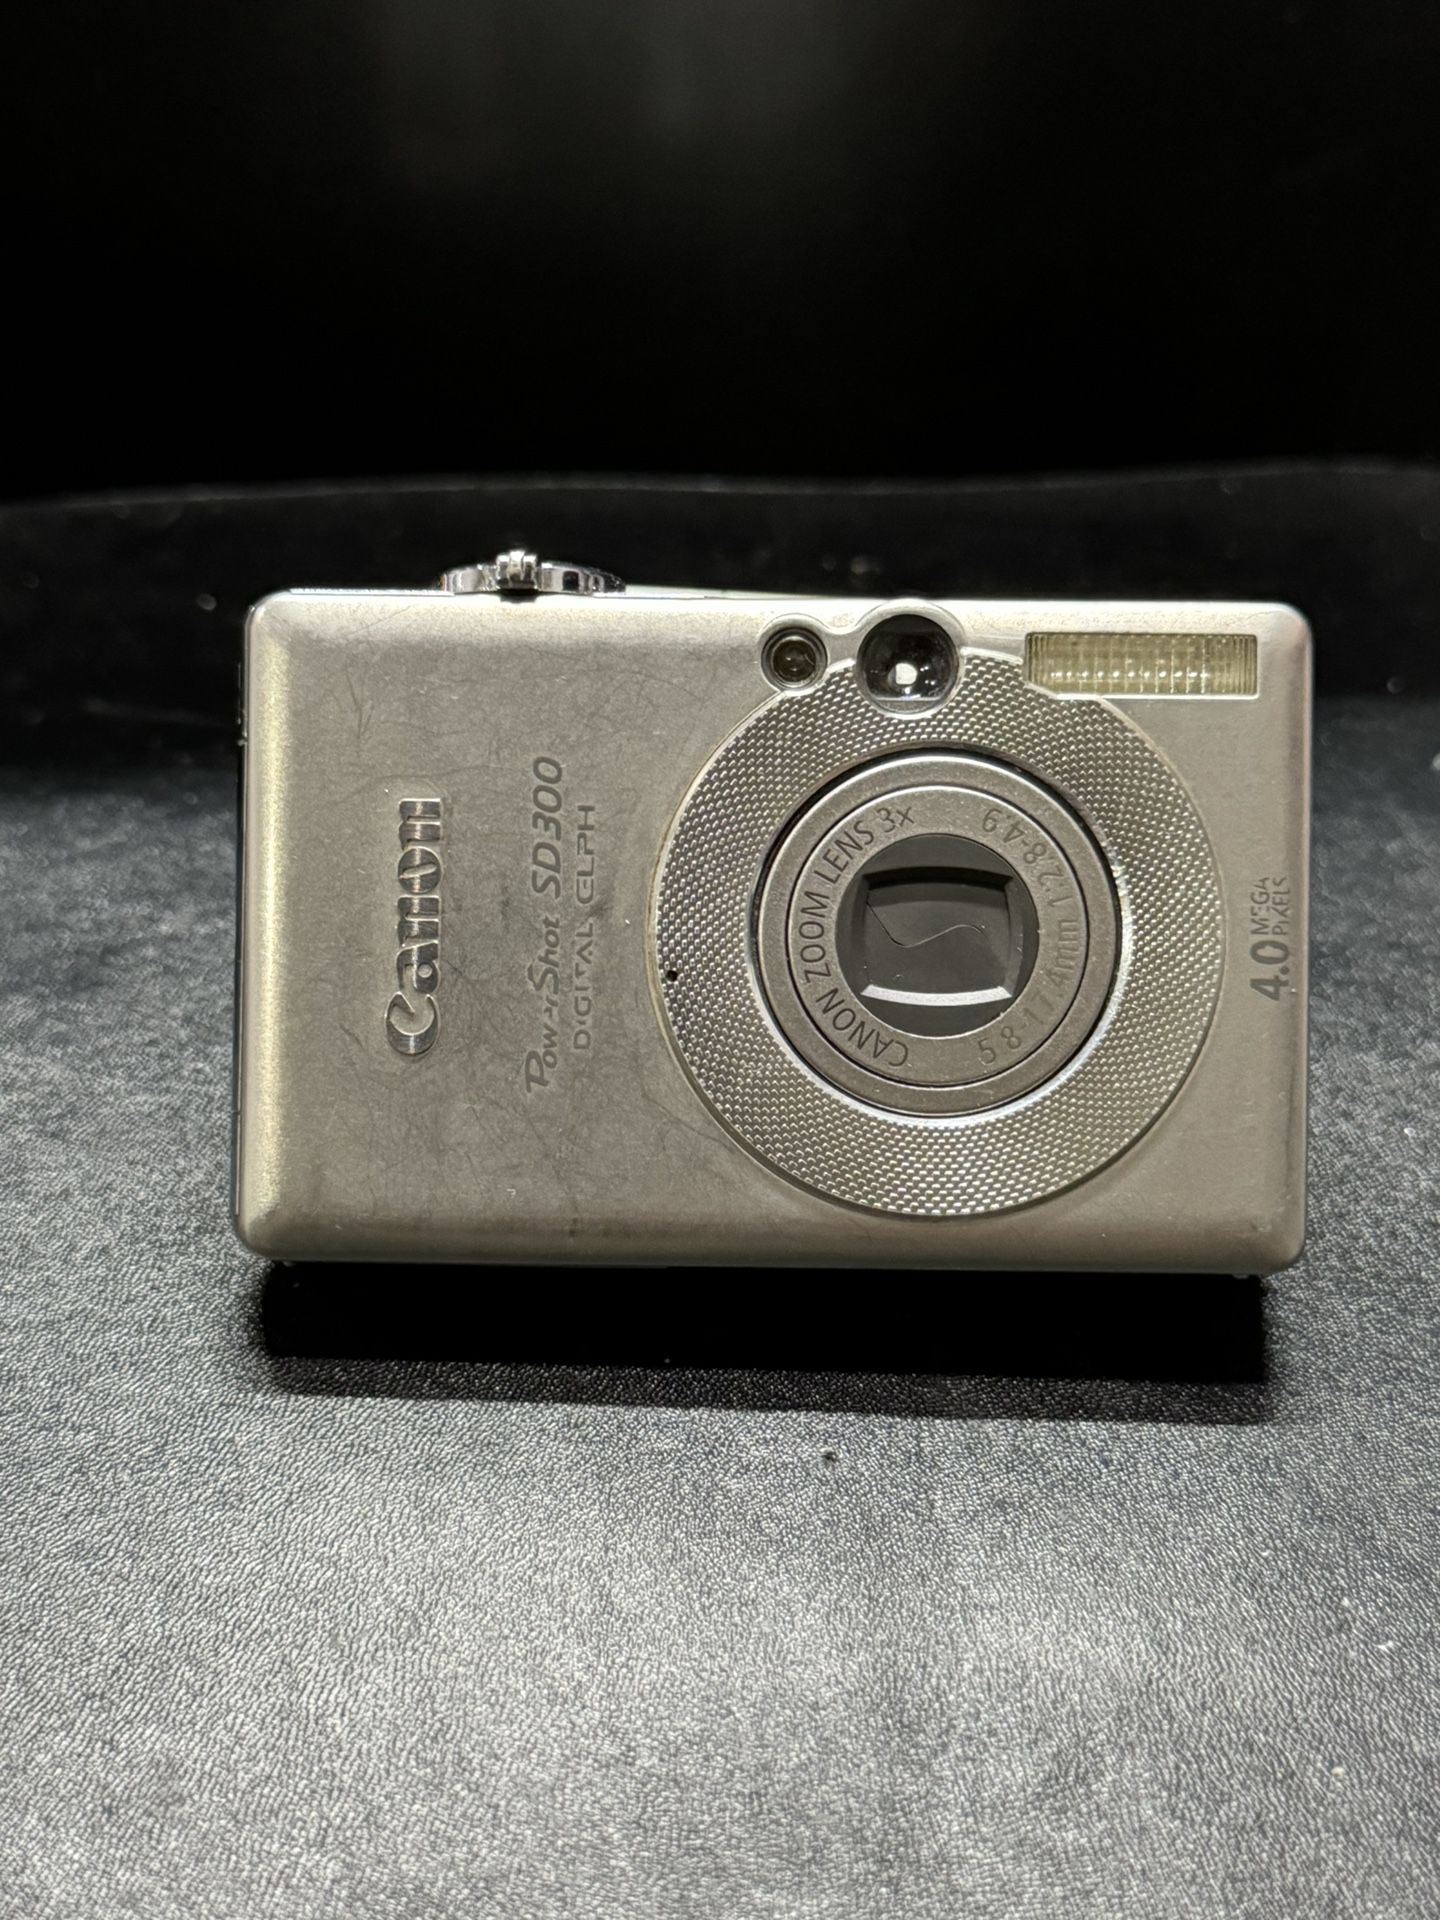 Canon SD300 4MP Digital Camera